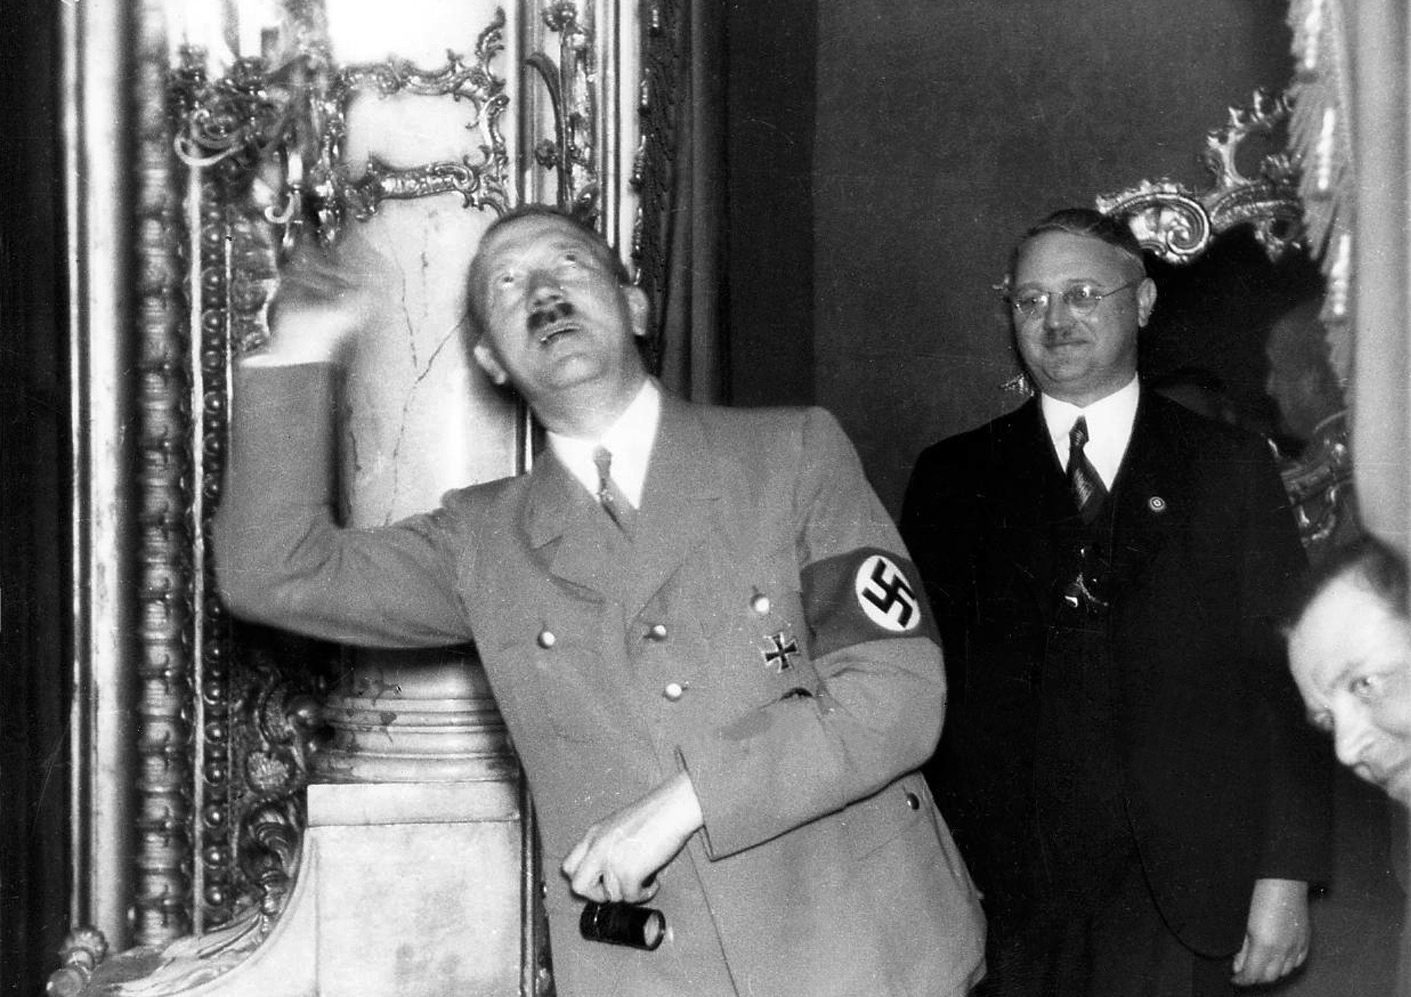 Adolf Hitler in Fürth's Stadttheater with Franz Jakob and Julius Schaub